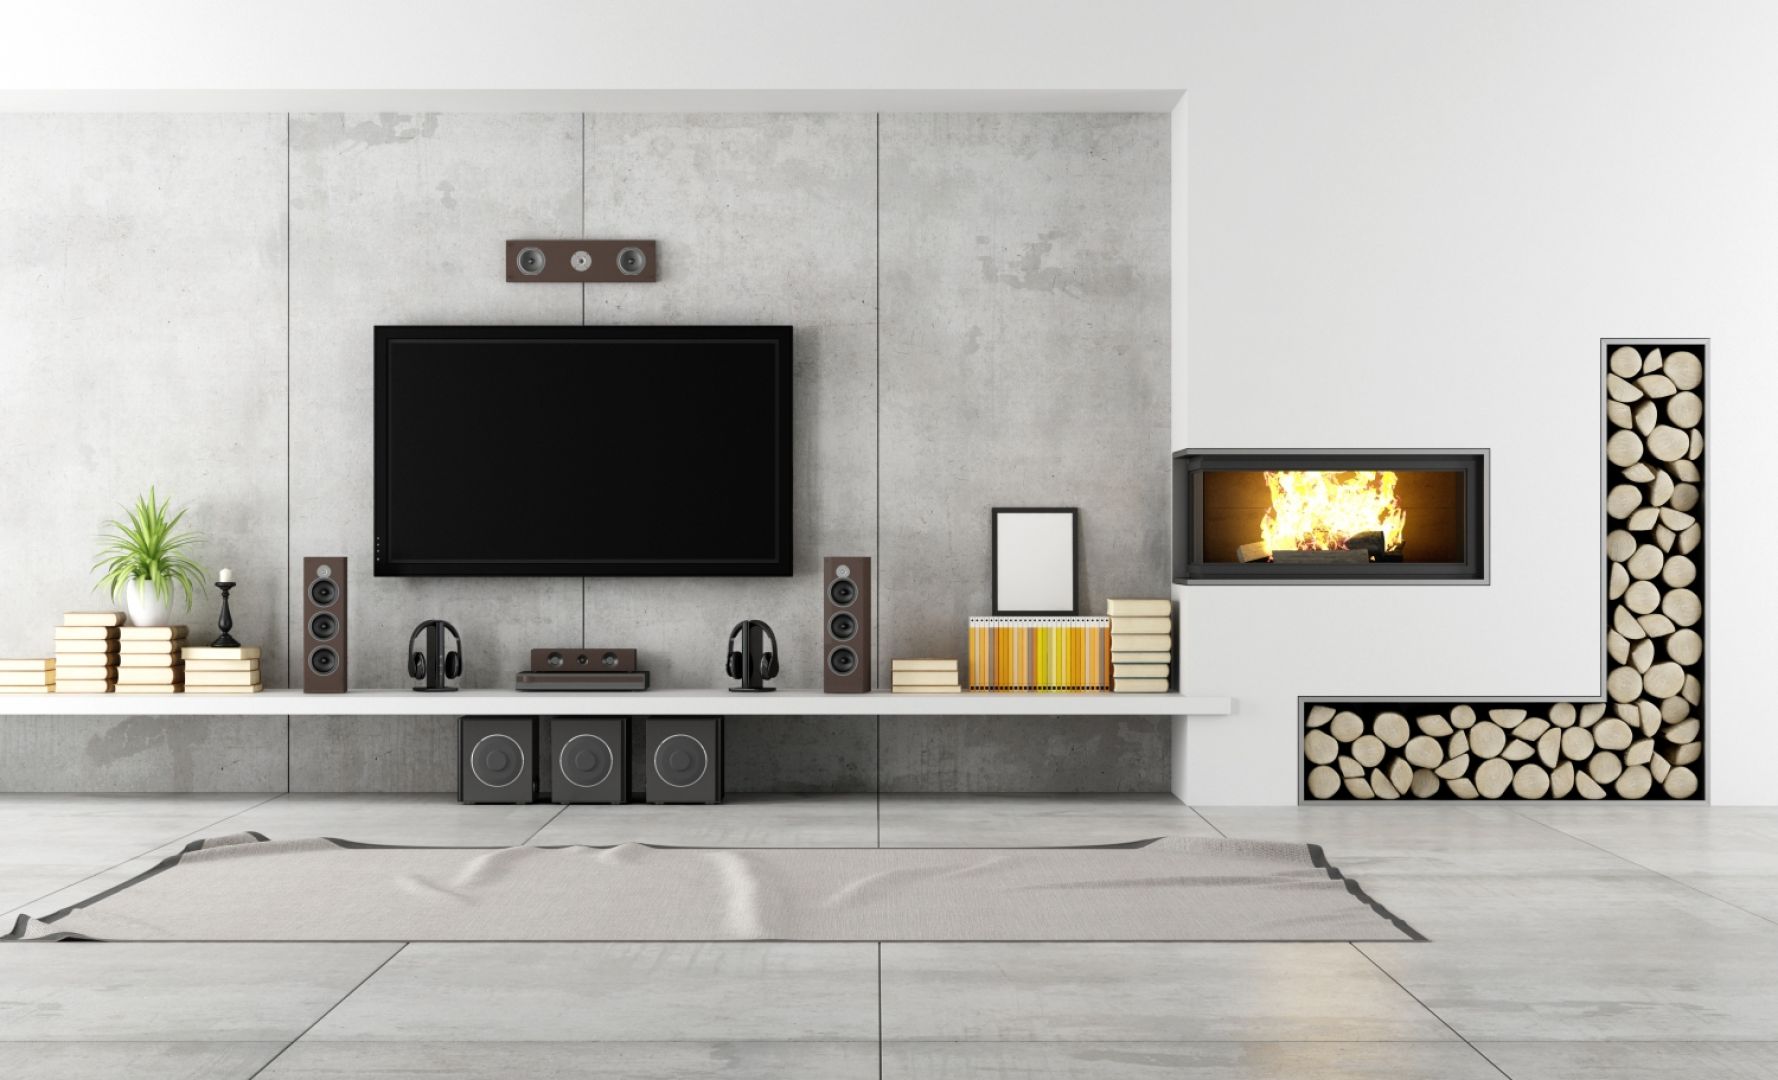 Przykład ciekawej aranżacji ścianki z kominkiem i telewizorem. Fot. Shutterstock